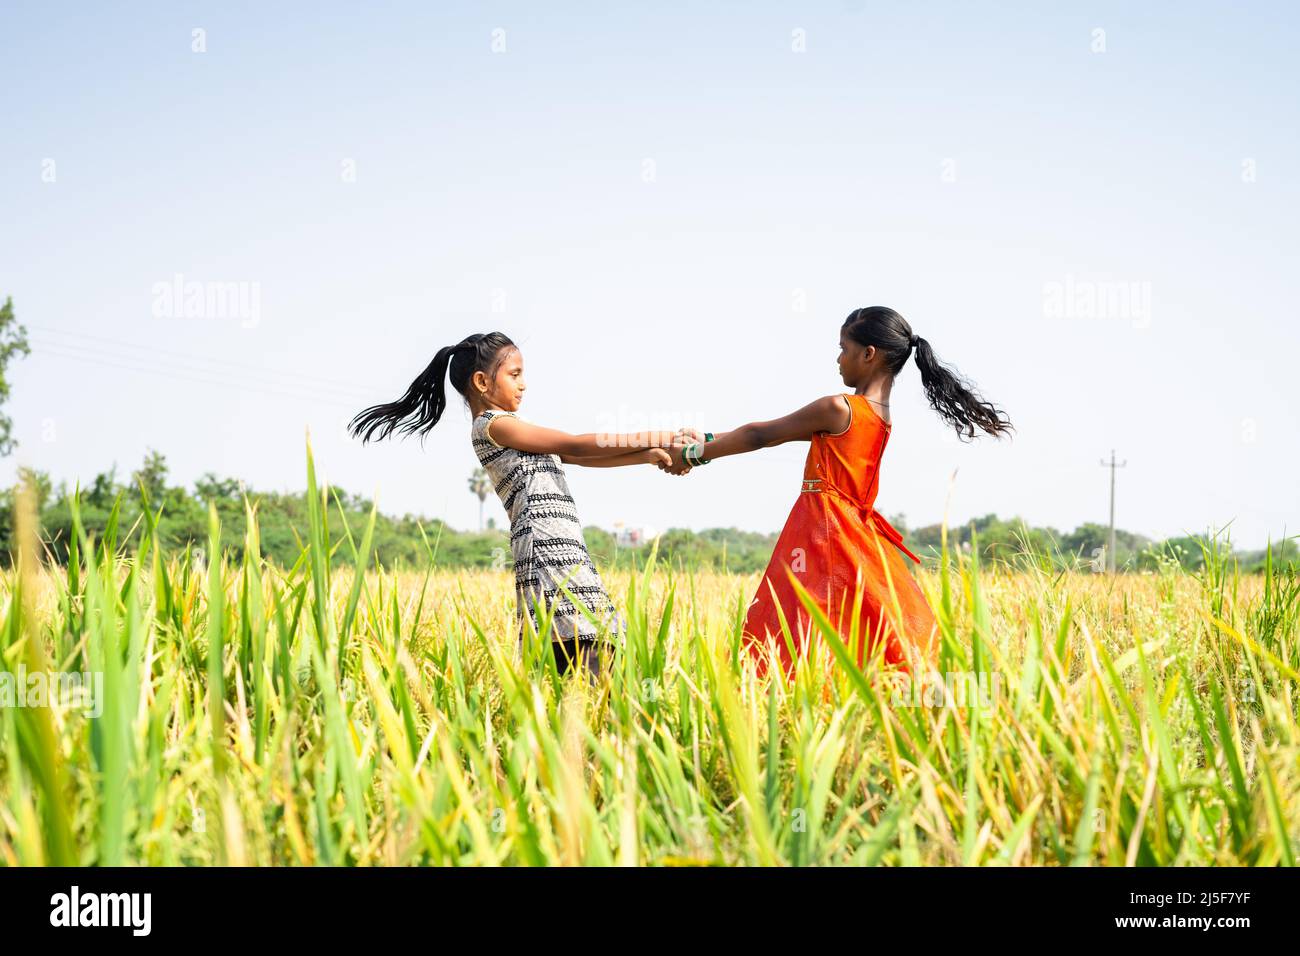 Junge Teenager Mädchen Kinder spielen in der Mitte des Reisfeldes während der Erntezeit - Konzept von Glück, spielerische Kindheit und Dorf Lebensfreude Stockfoto